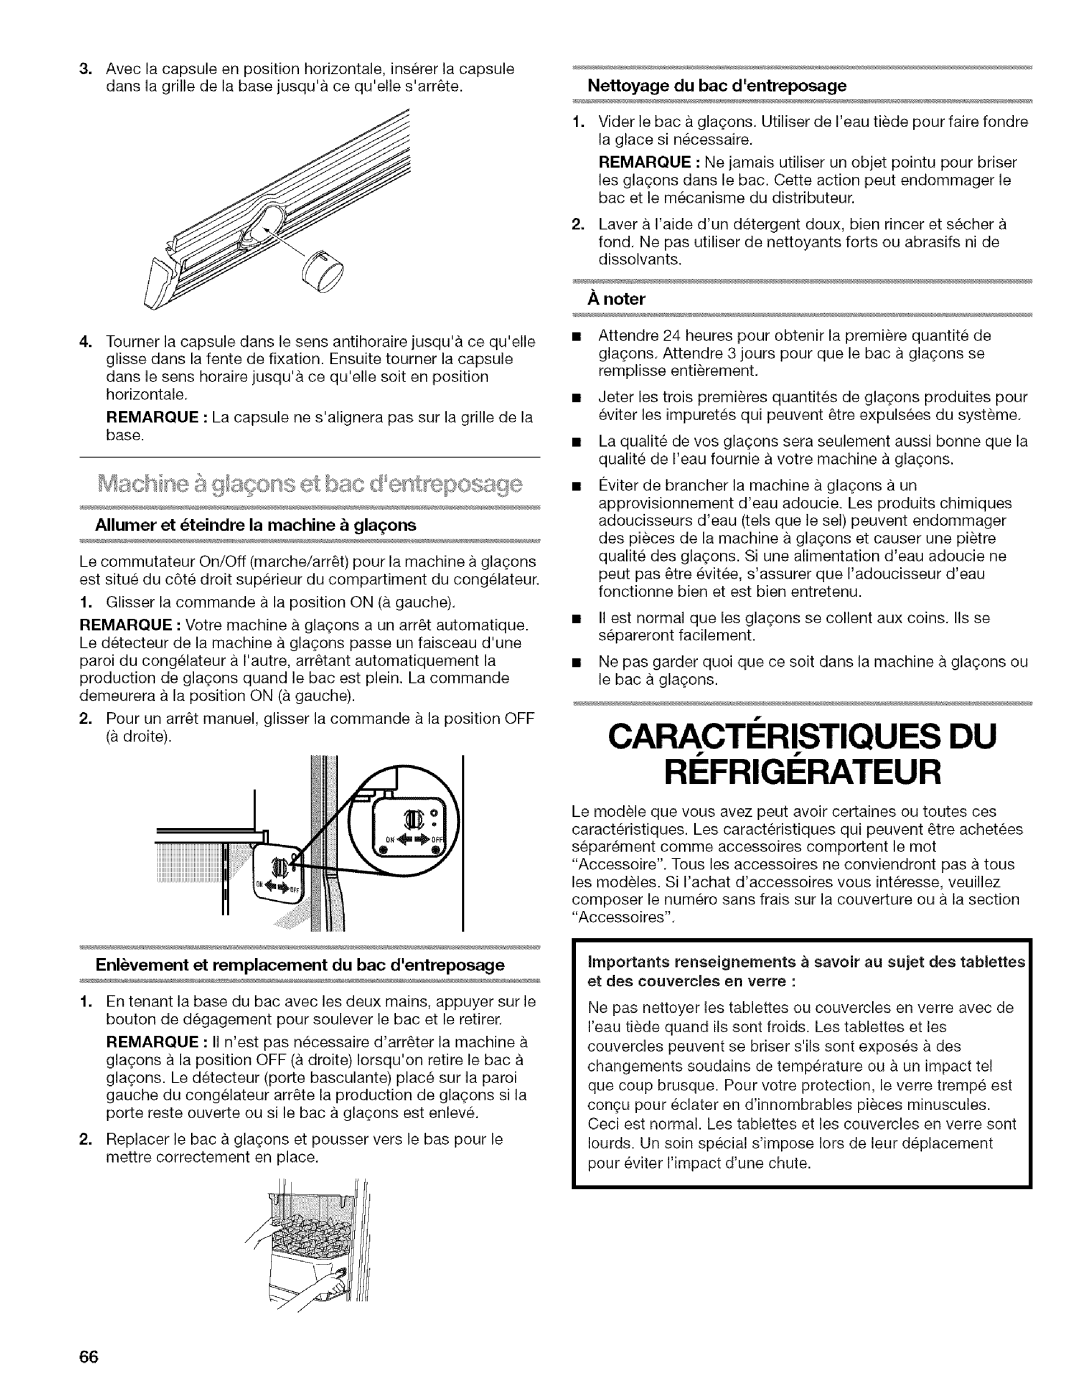 Kenmore WI0151336A manual Caracti:!:Ristiques Du, Ri Frigi Rateur, Nettoyage du bac dentreposage, Anoter 